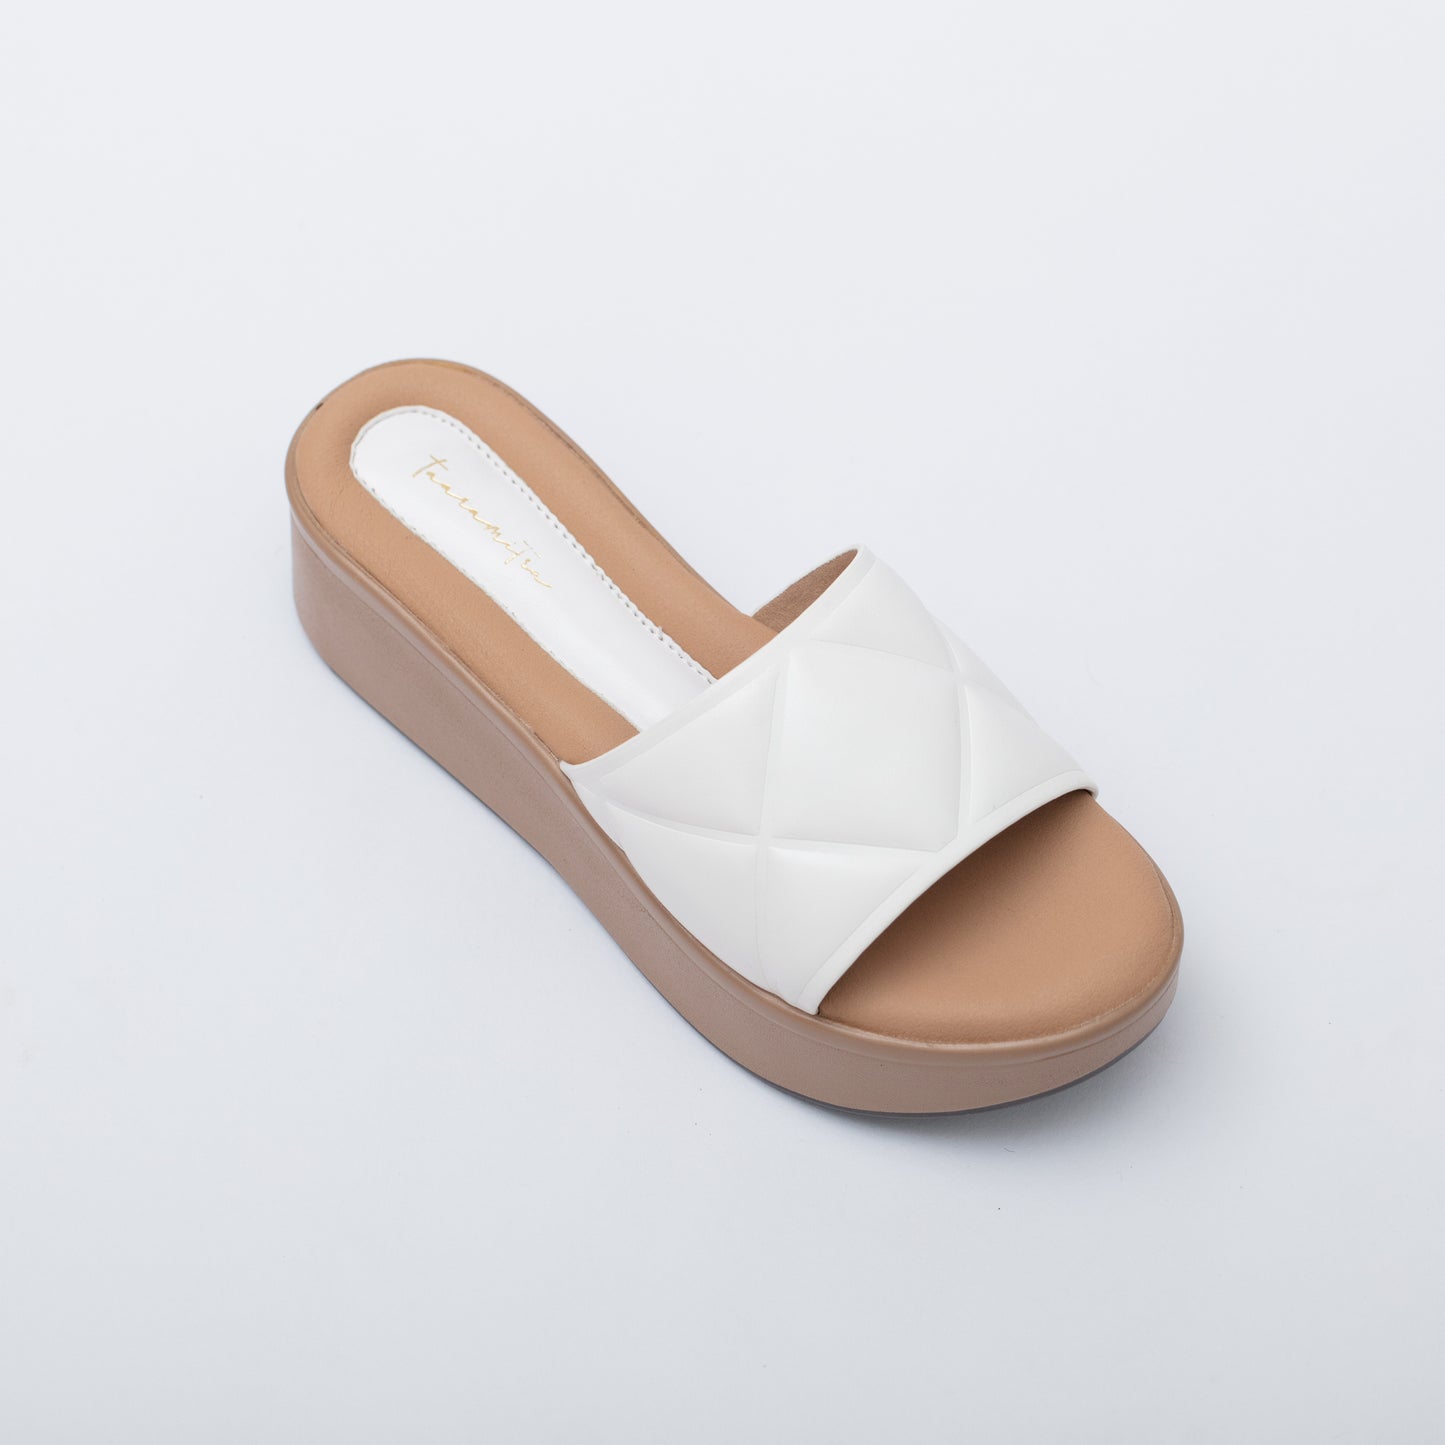 Mista flatform in white heel sandals